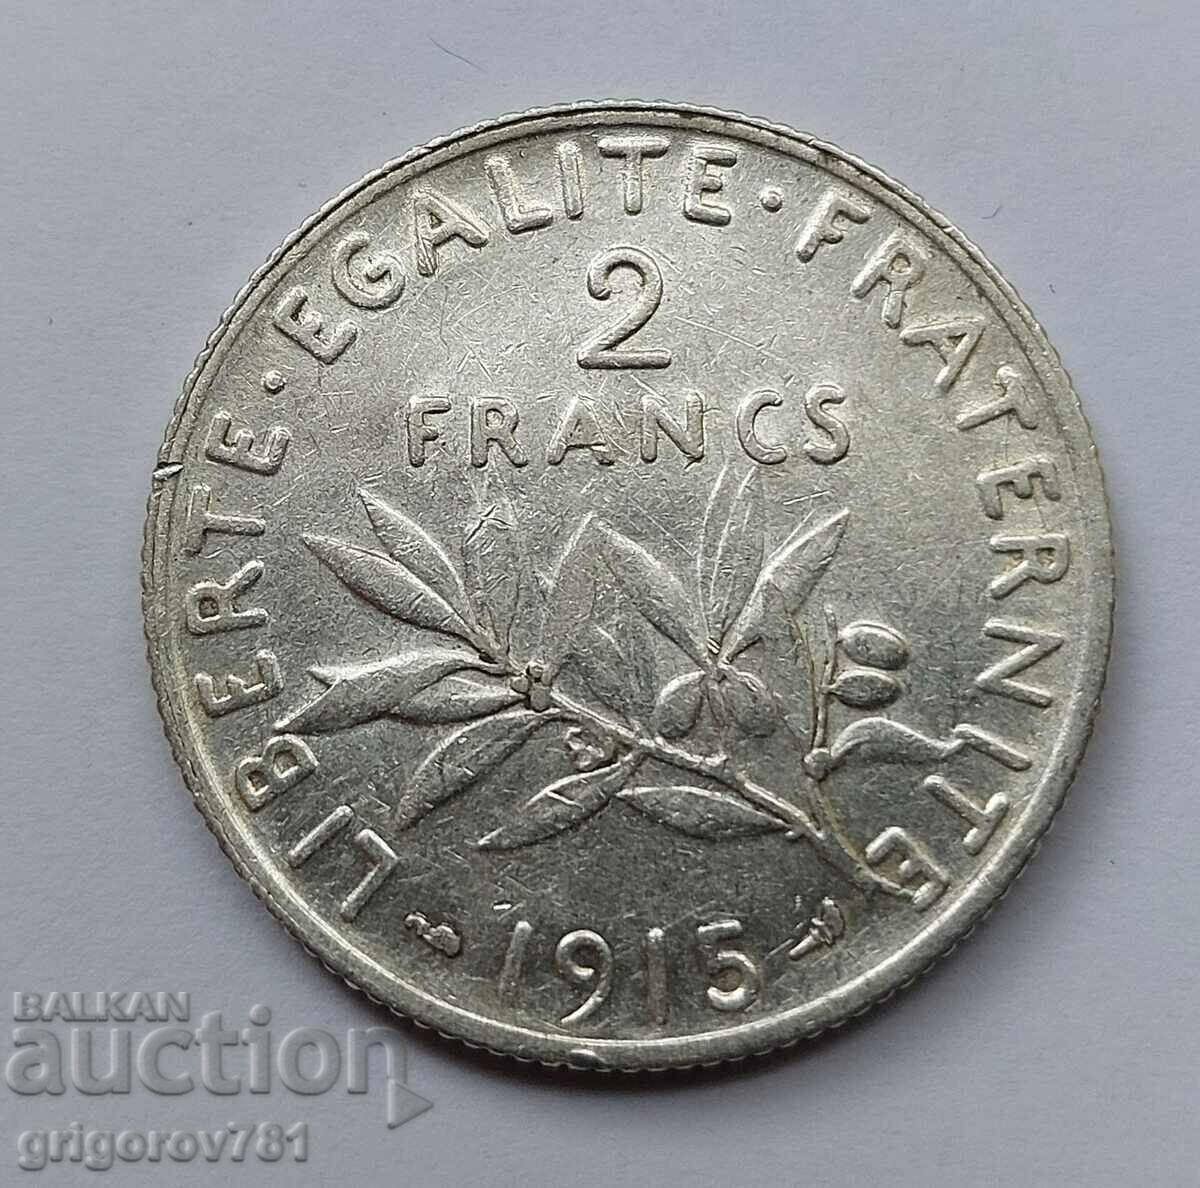 2 Franci Argint Franta 1898 - Moneda de argint #30